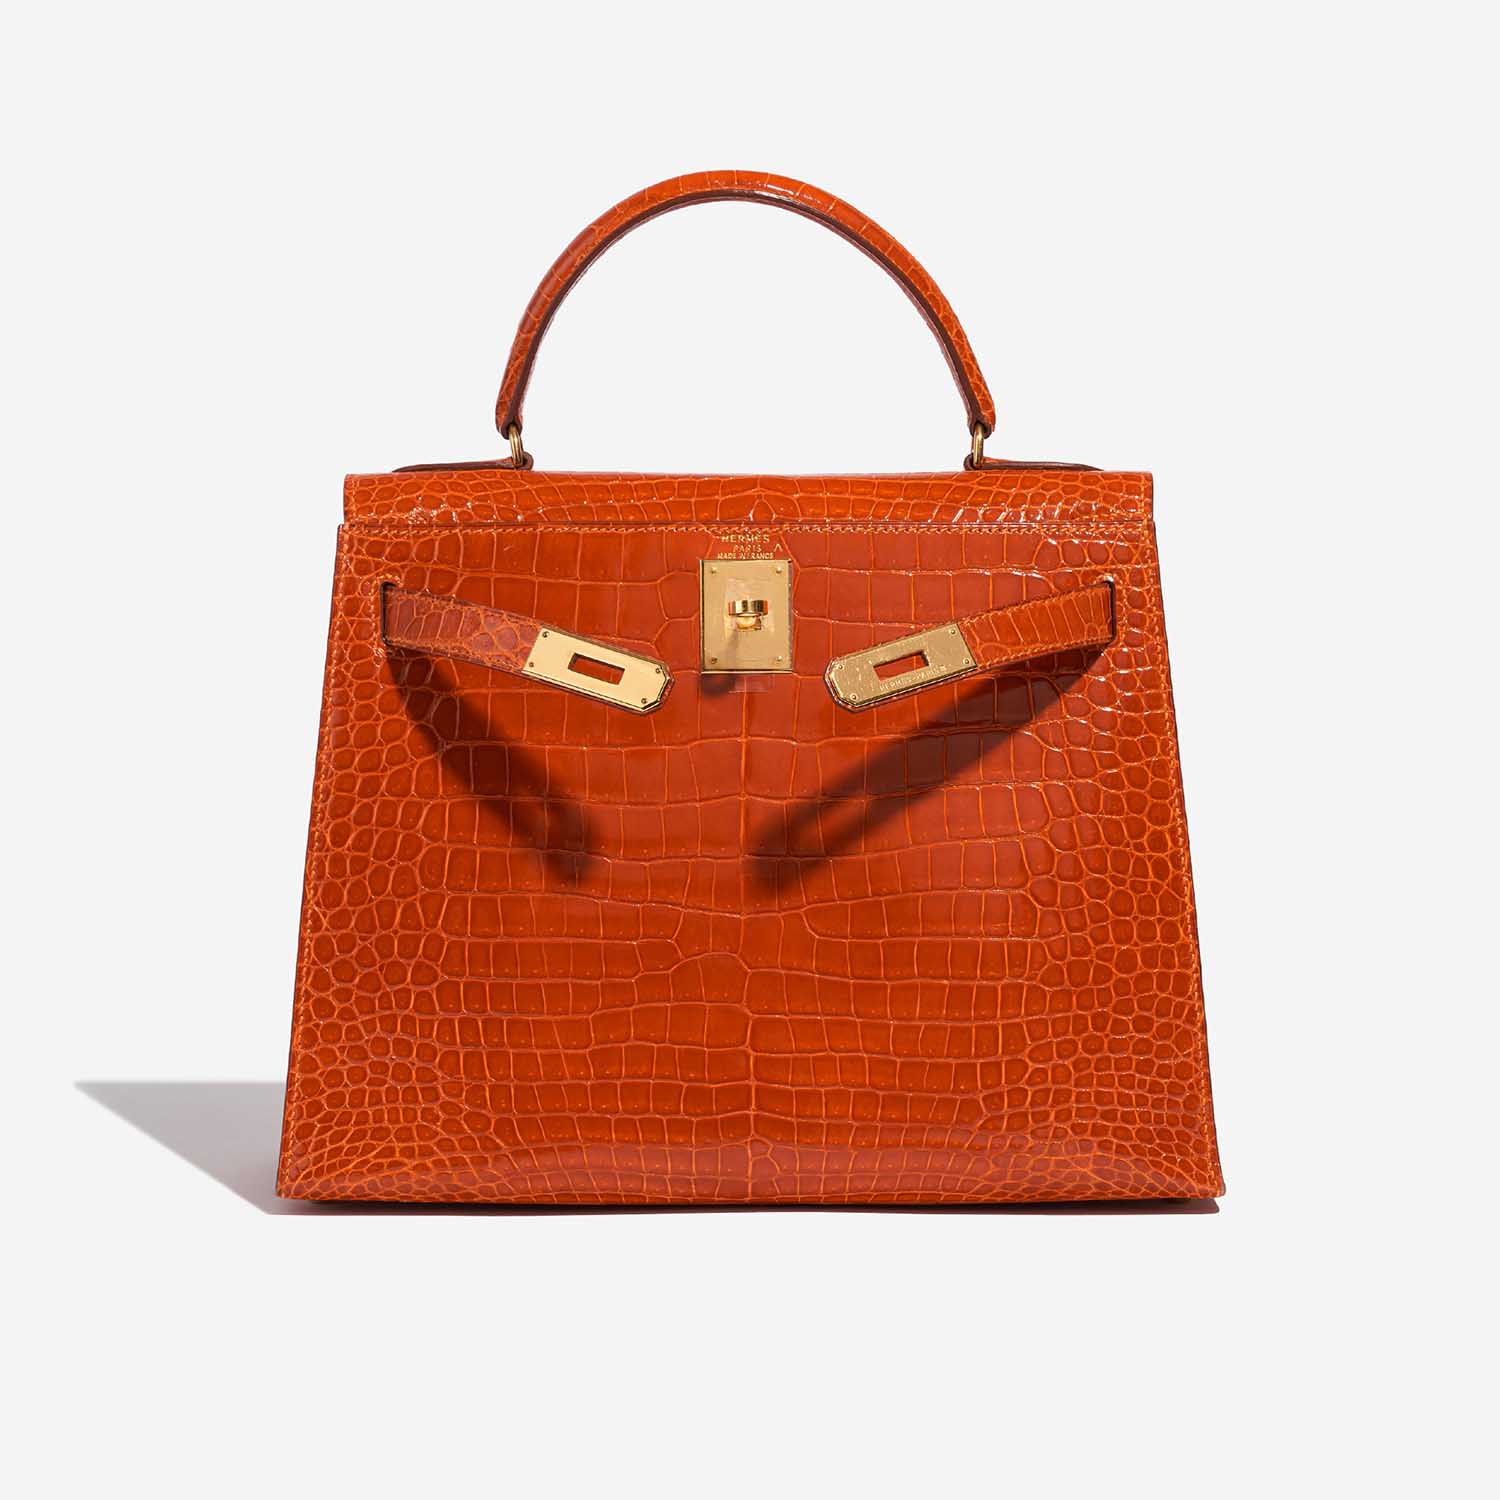 Pre-owned Hermès Tasche Kelly 28 Porosus Krokodil Orange H Orange Front Open | Verkaufen Sie Ihre Designer-Tasche auf Saclab.com